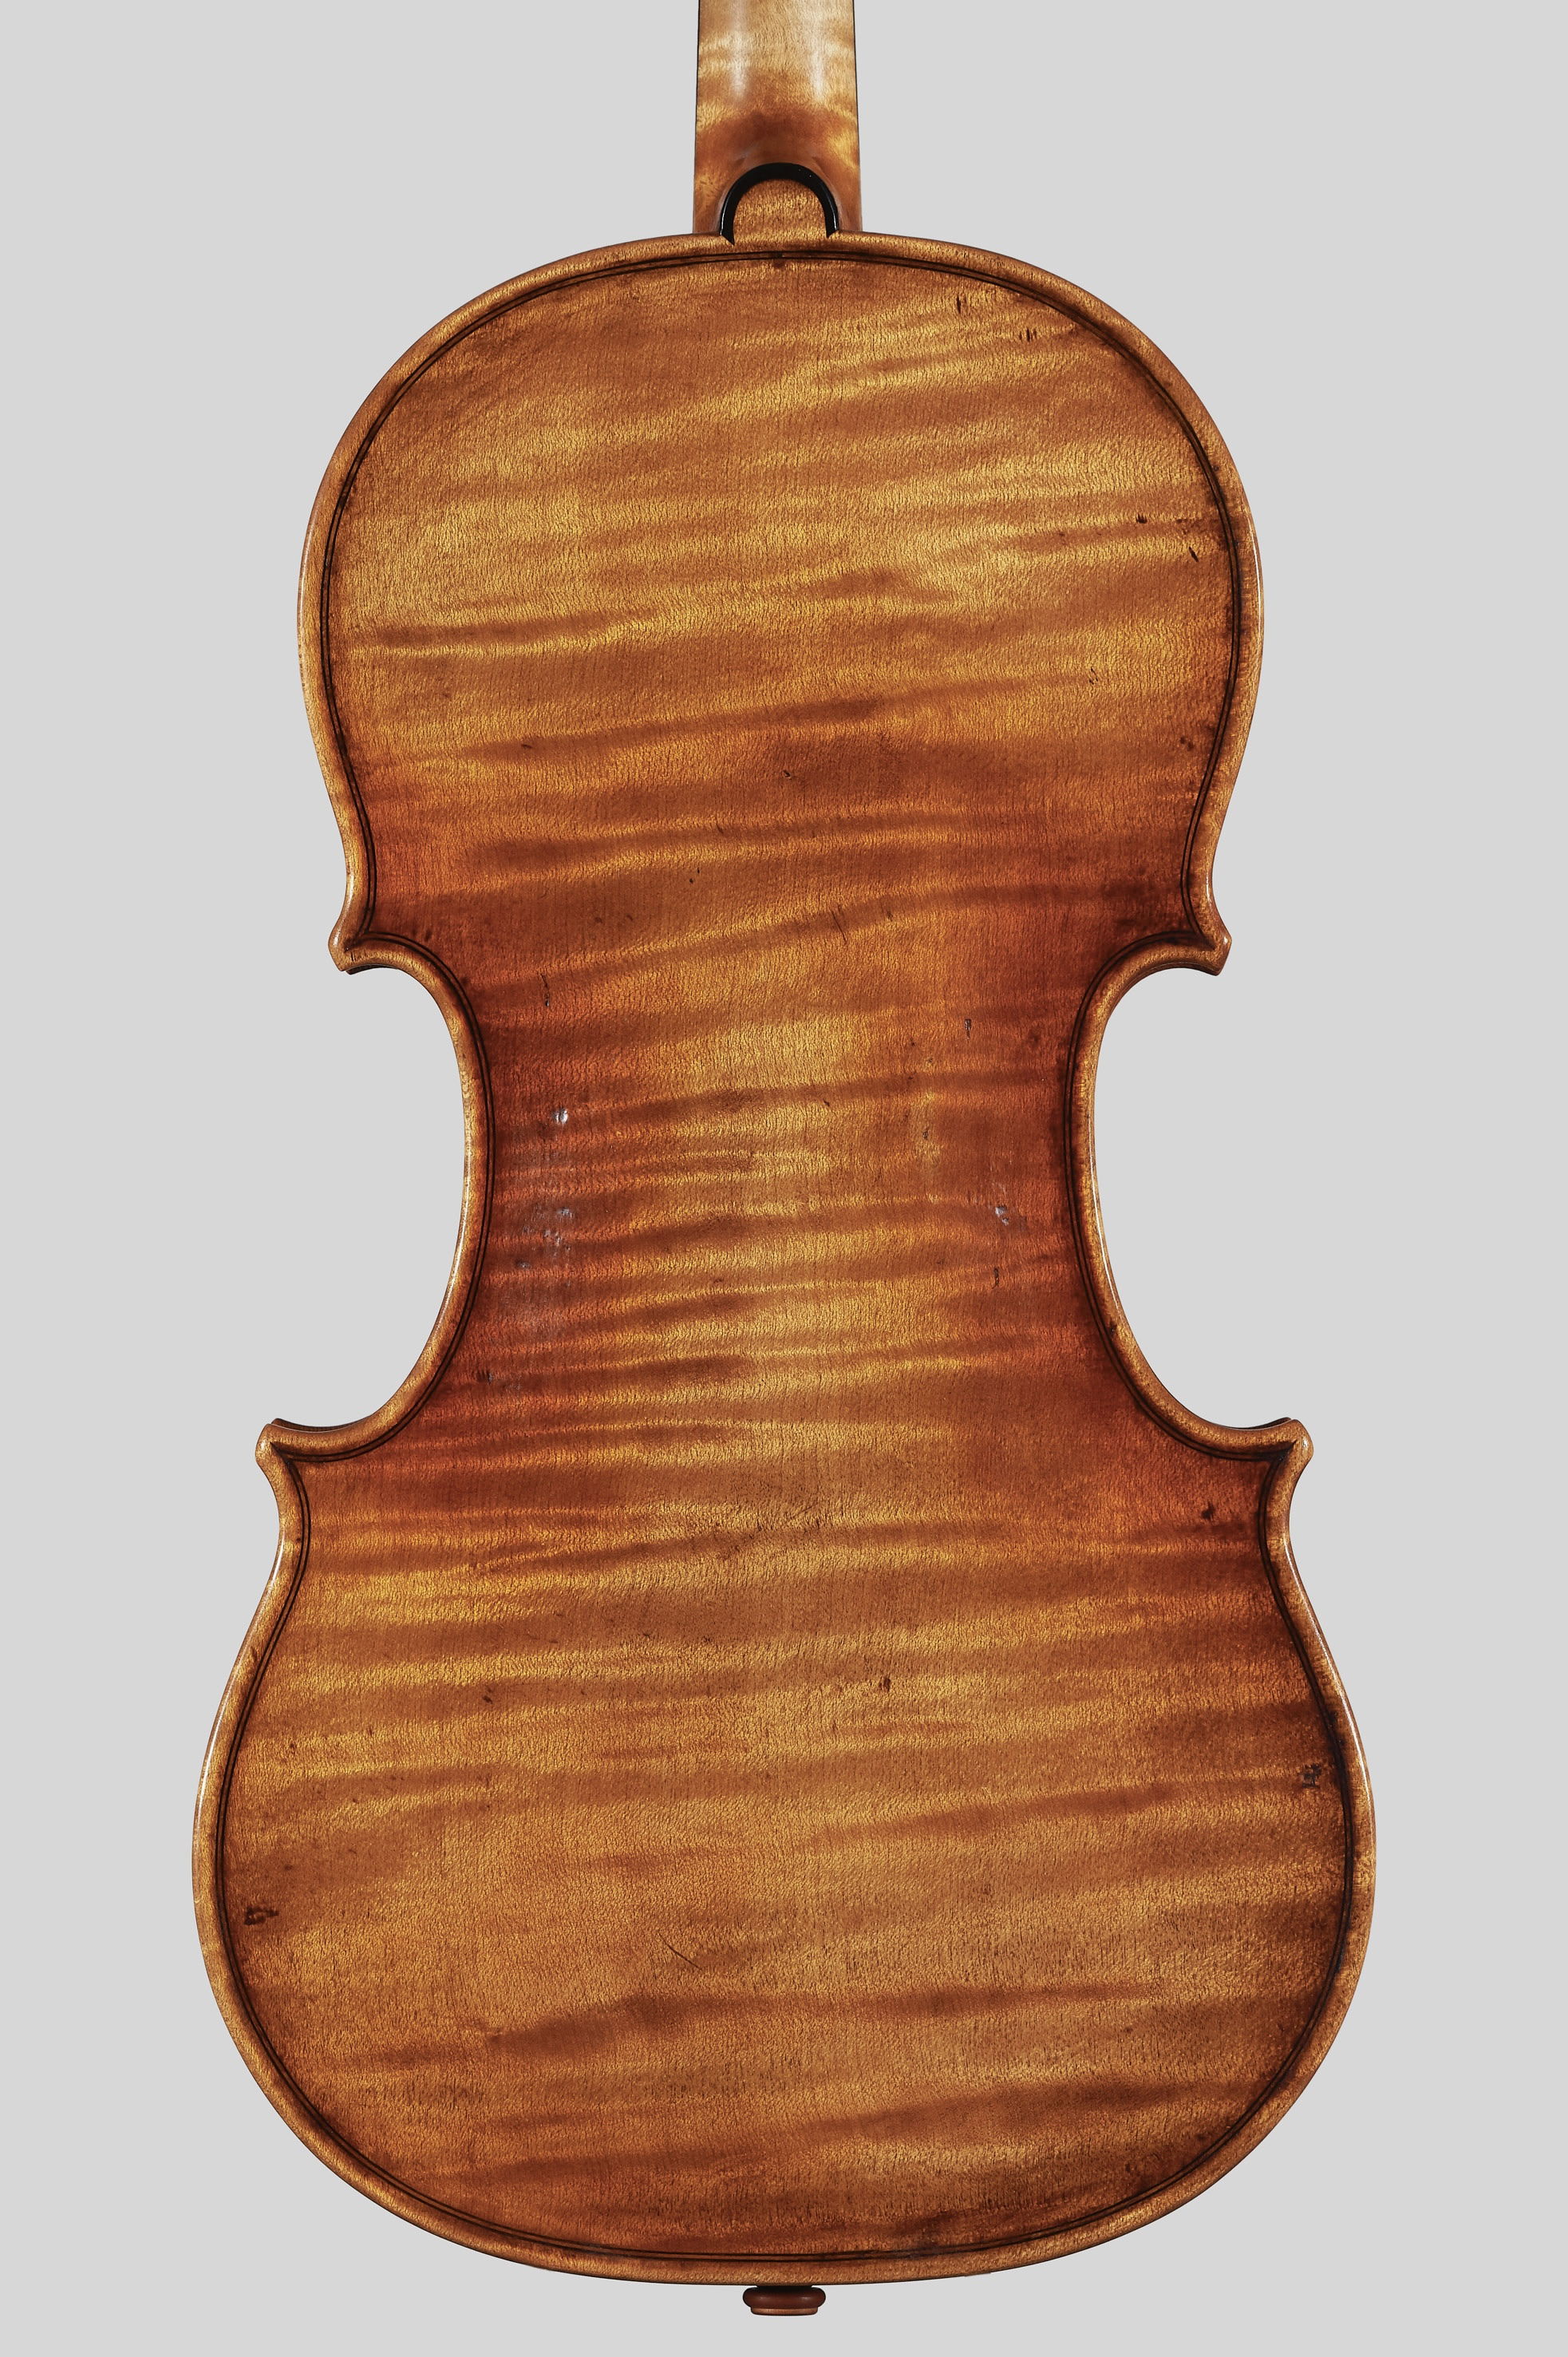 Antonio Stradivari Violin 1721